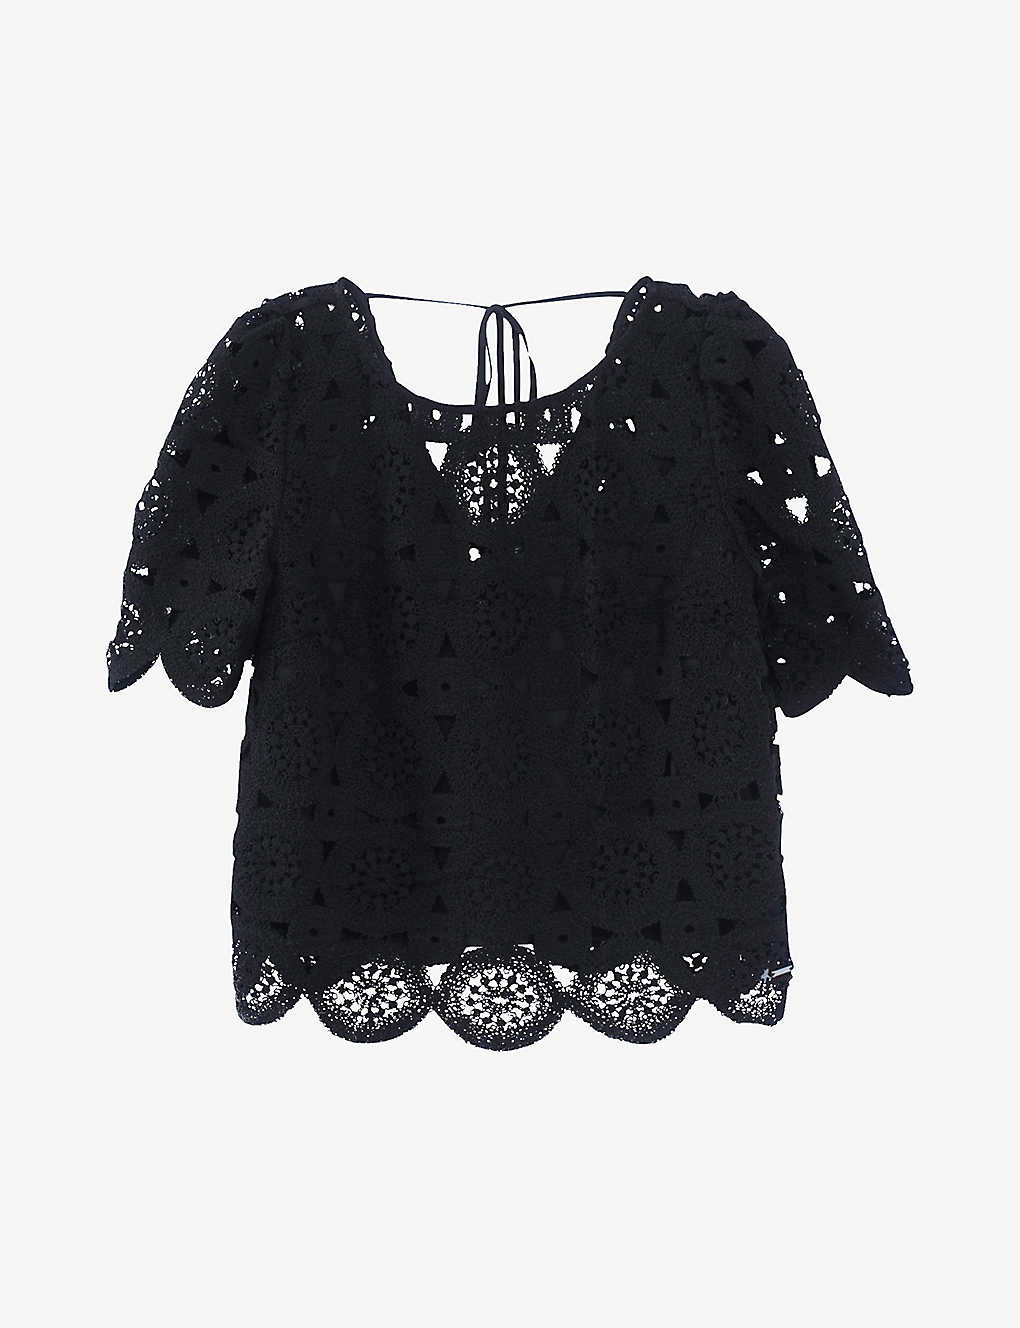 Ikks Womens Black Crochet-pattern Cotton Top